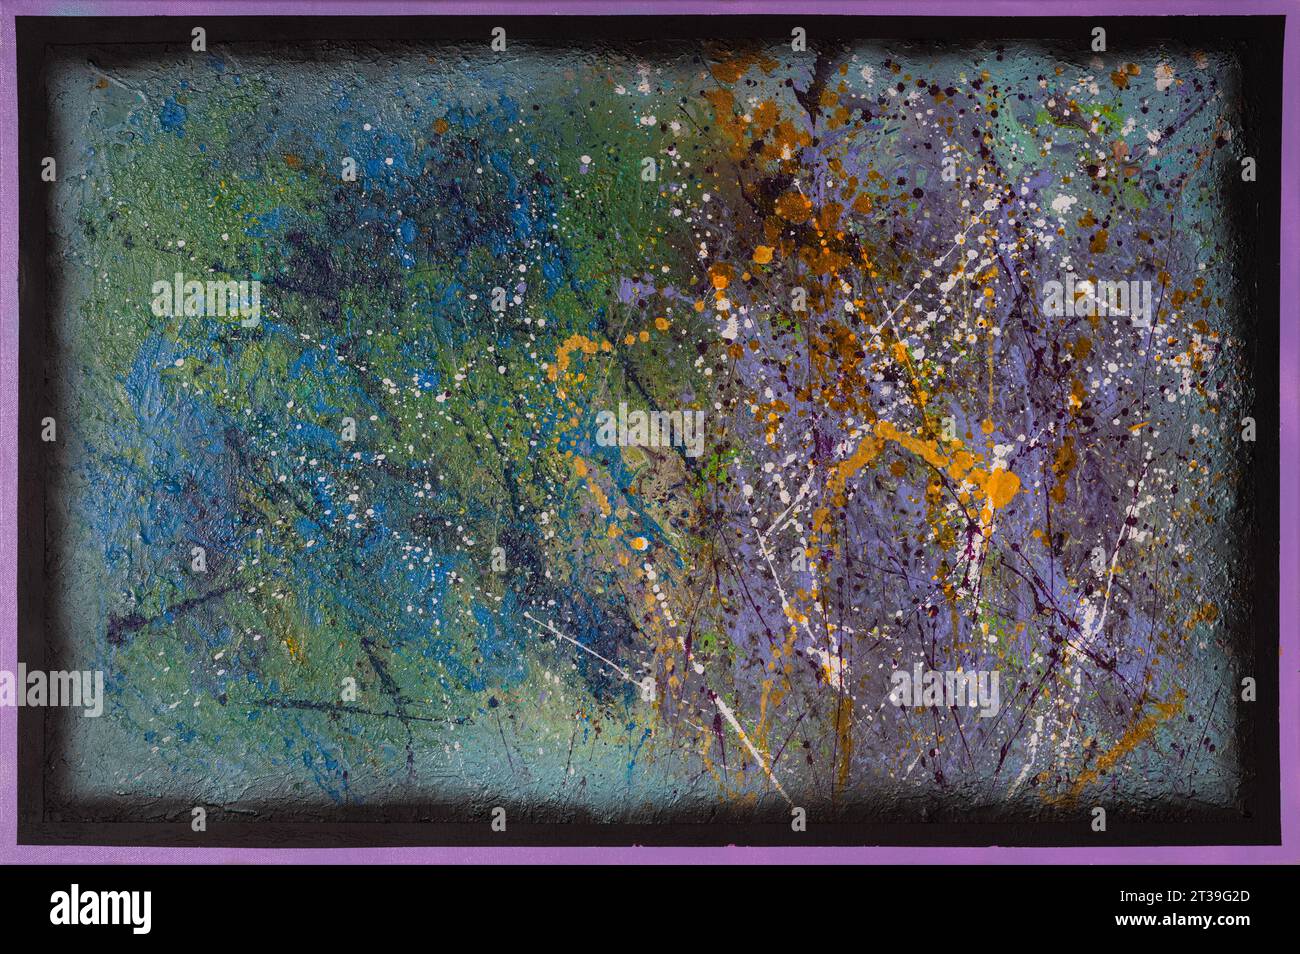 Ein lebendiges abstraktes Gemälde mit einer kosmischen Mischung aus tiefen Blau-, Grün-, Violett- und Goldgelb-Tönen Stockfoto